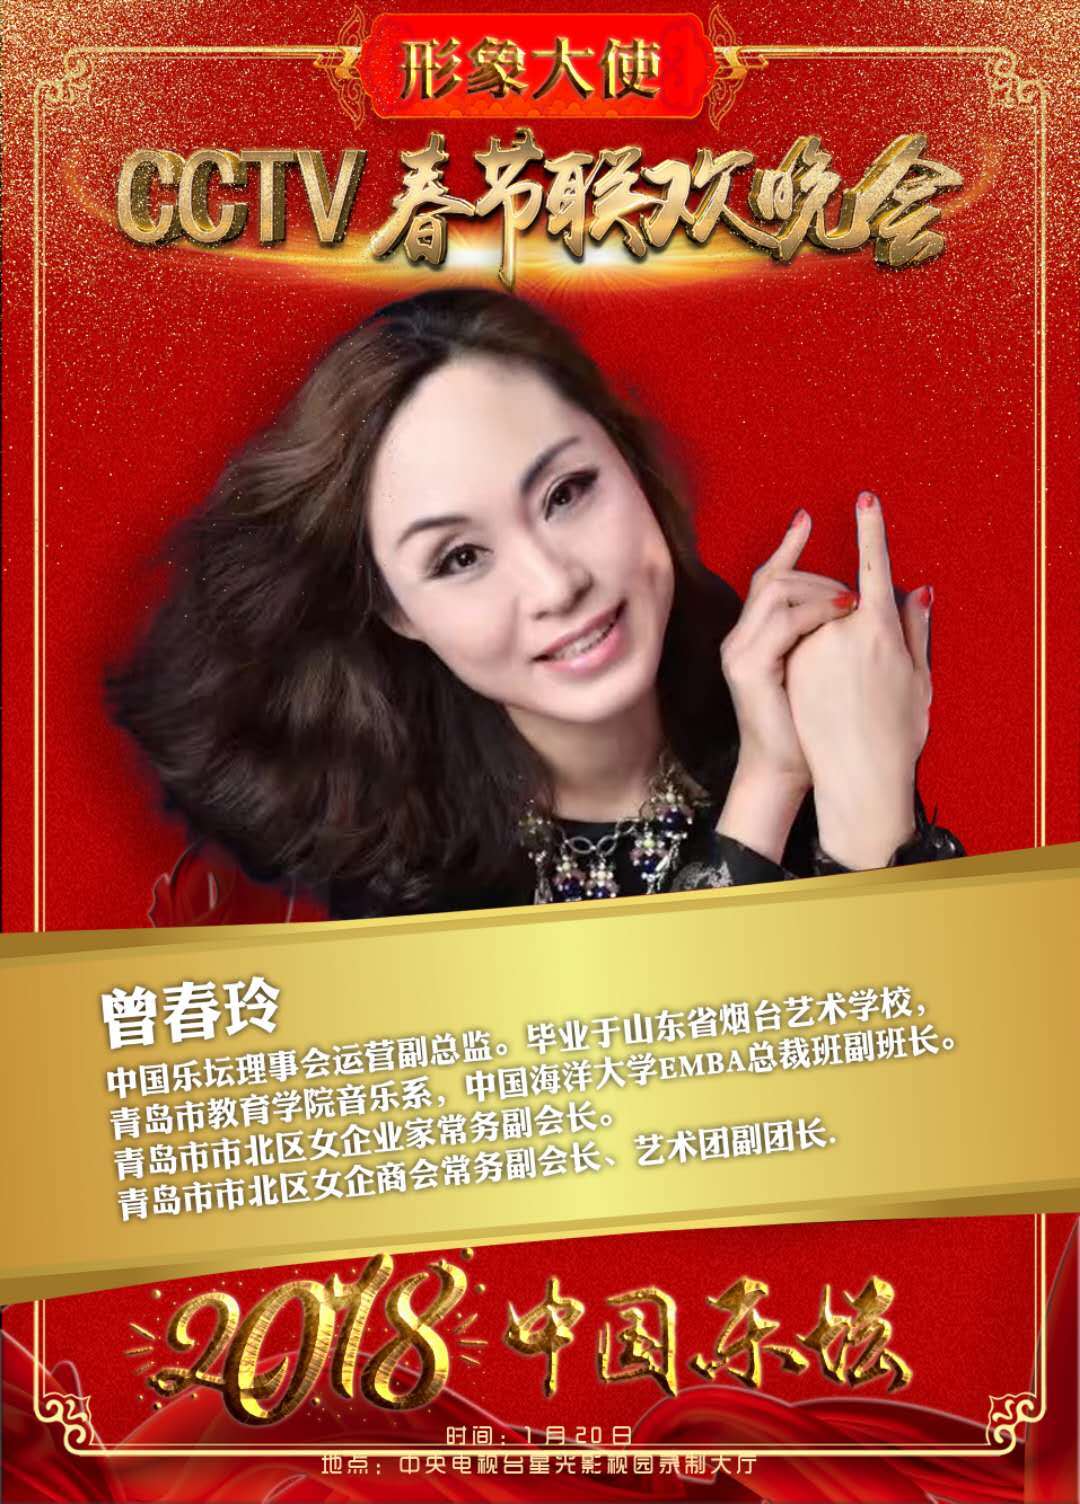 《中国乐坛》2018年春节联欢晚会形象代言人